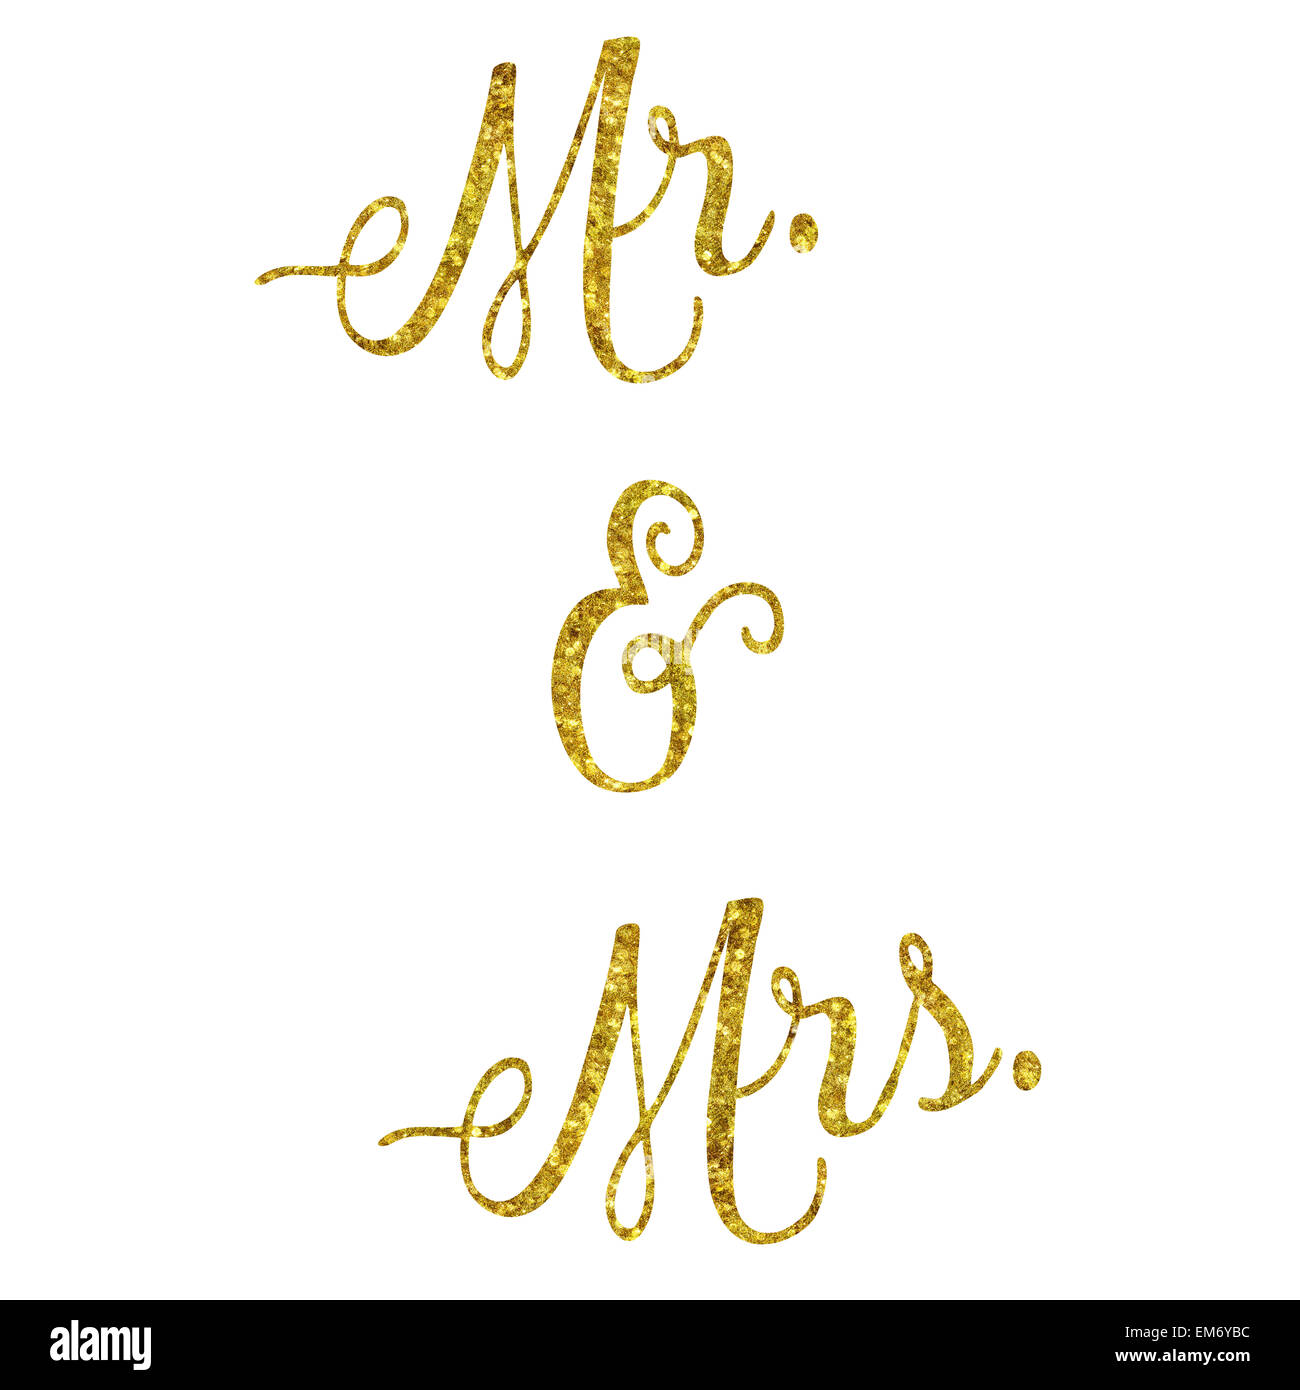 Mr. und Mrs glitzernde Gold Faux Folie Metallic inspirierend Zitat Isolated on White Background Stockfoto